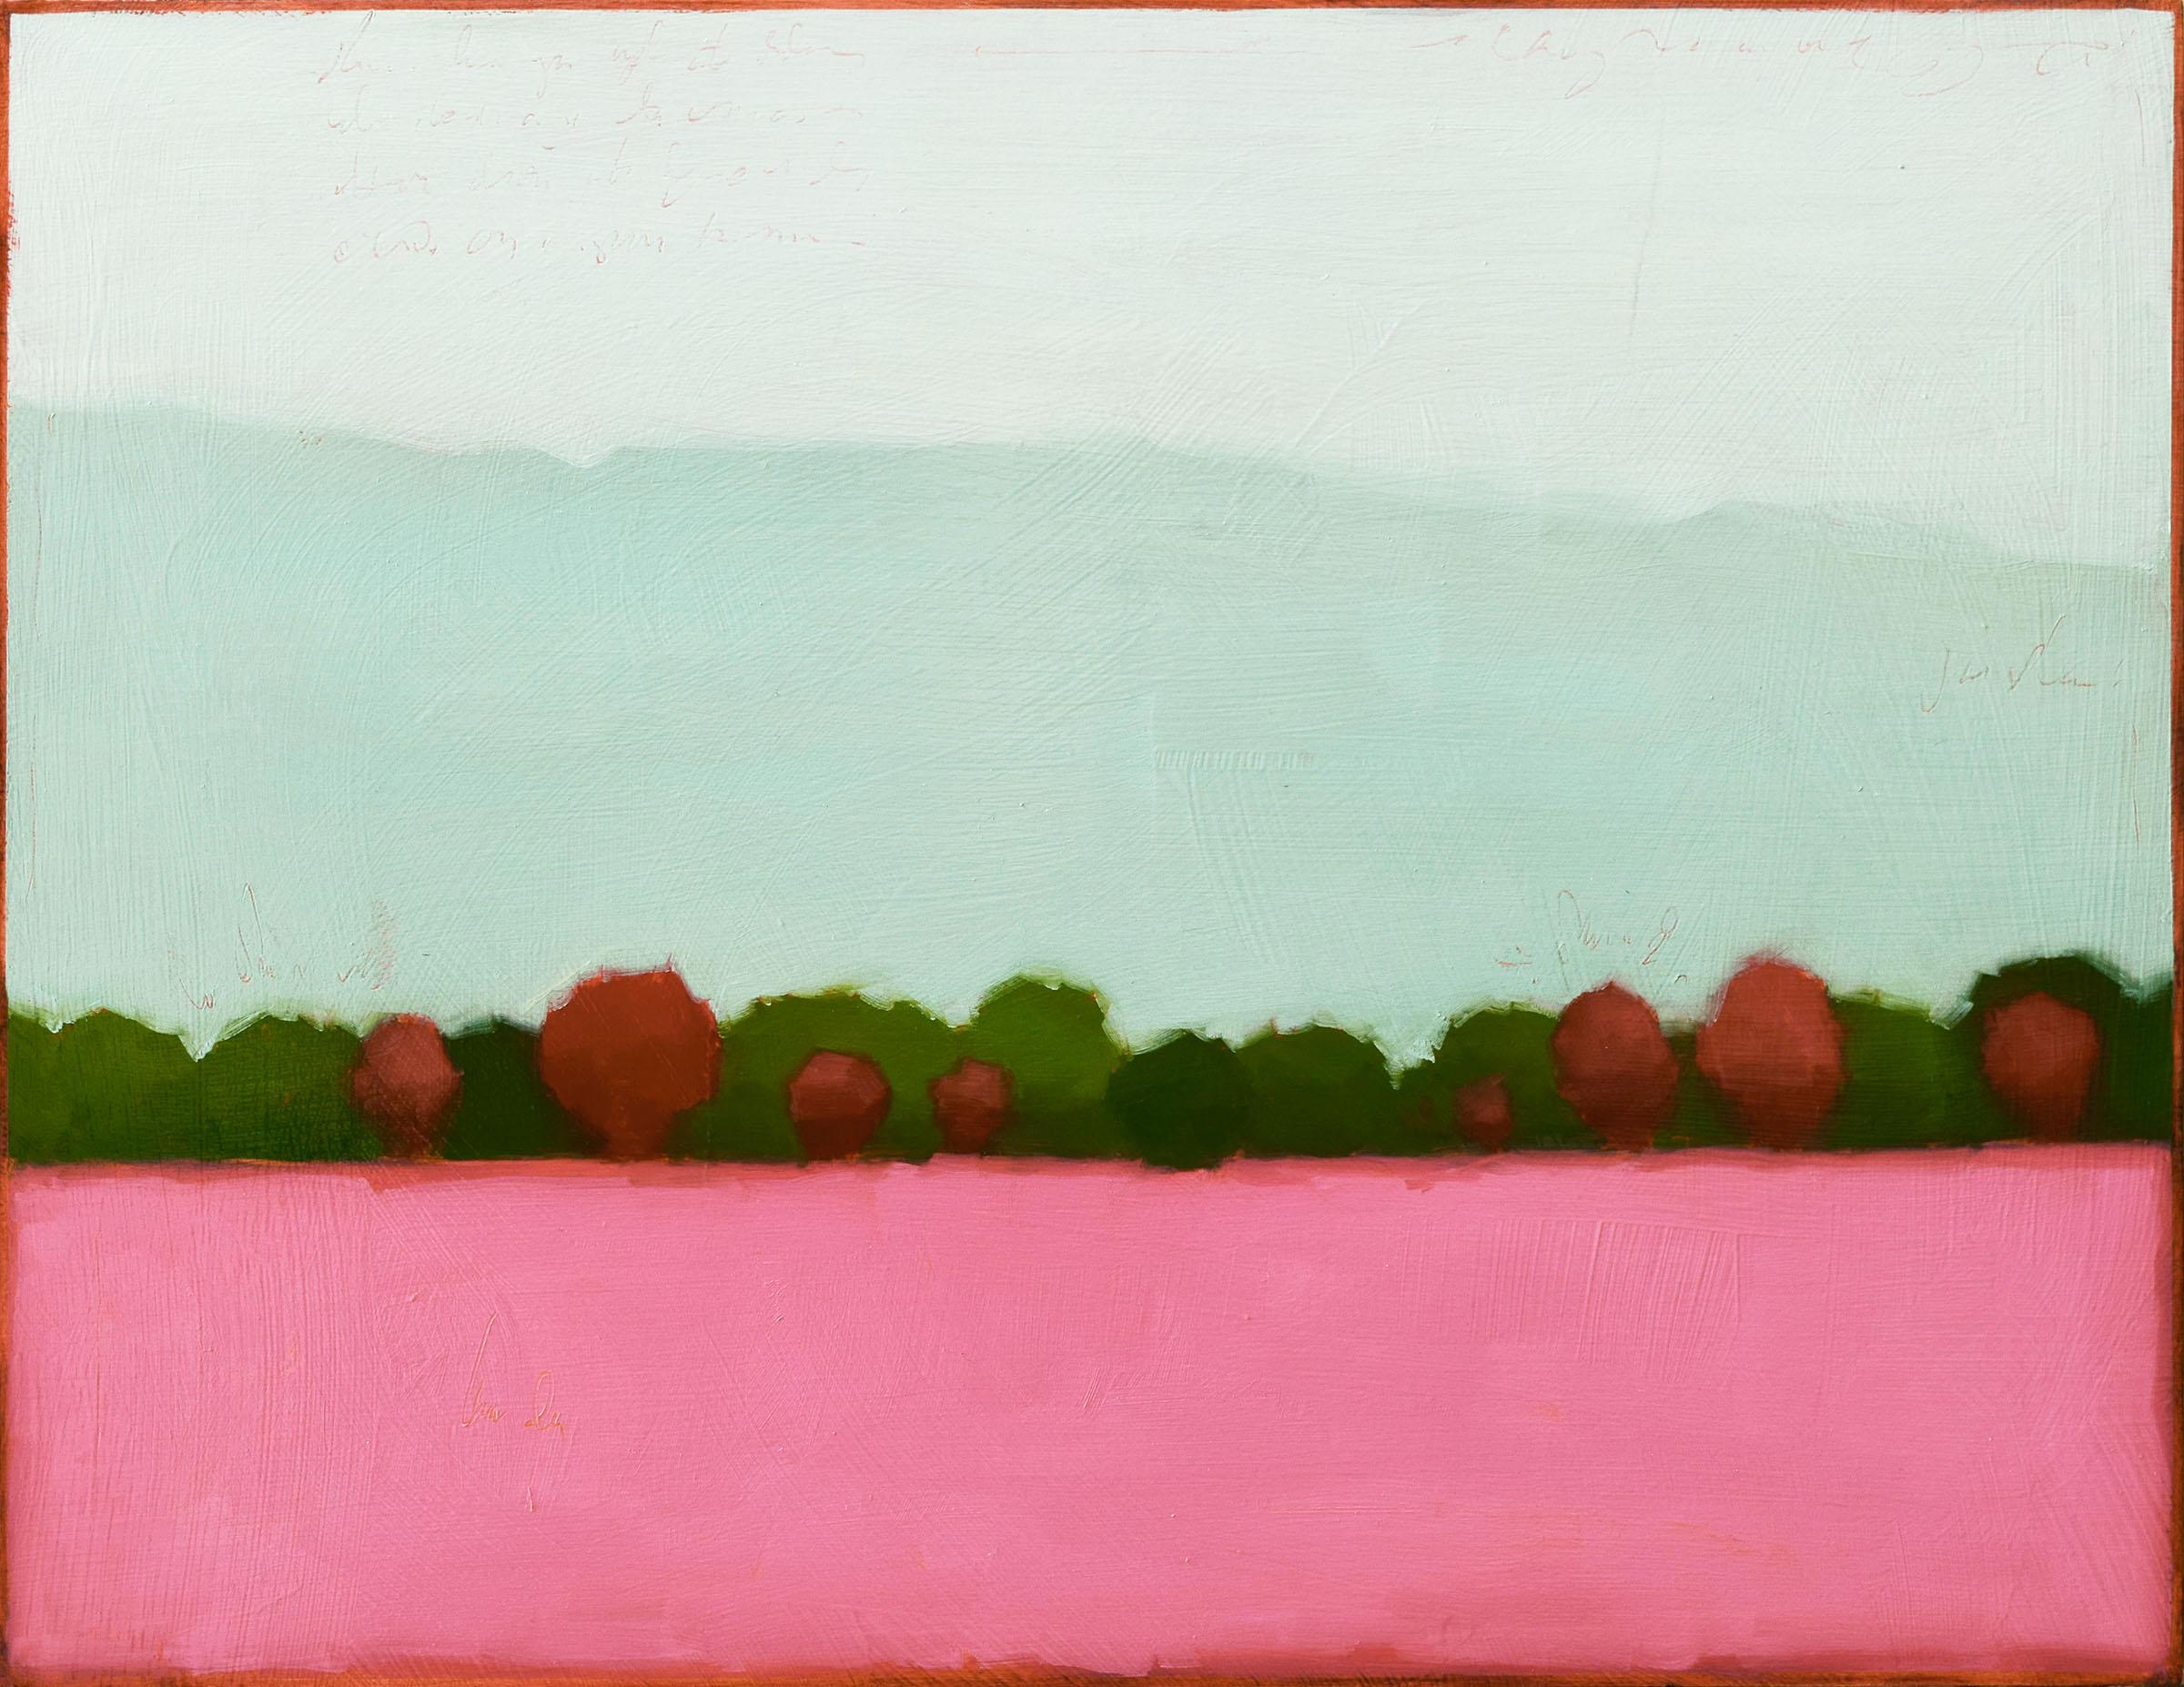 Abstract Painting Tracy Helgeson - Field de couleurs 608 (peinture de paysage contemporaine, ligne d'arbre au-delà d'un champ rose)